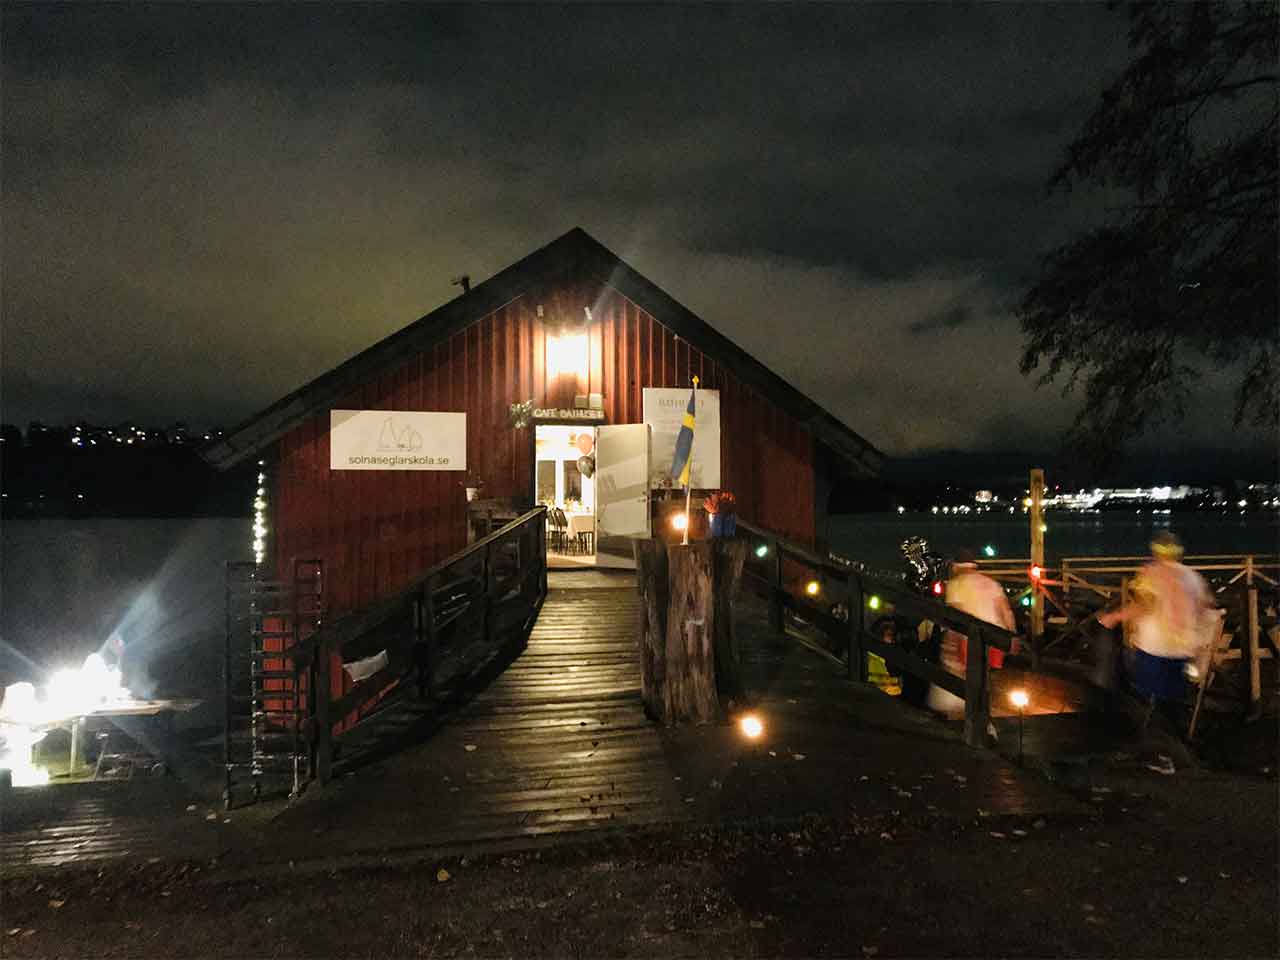 Båthuset festlokal i Solna